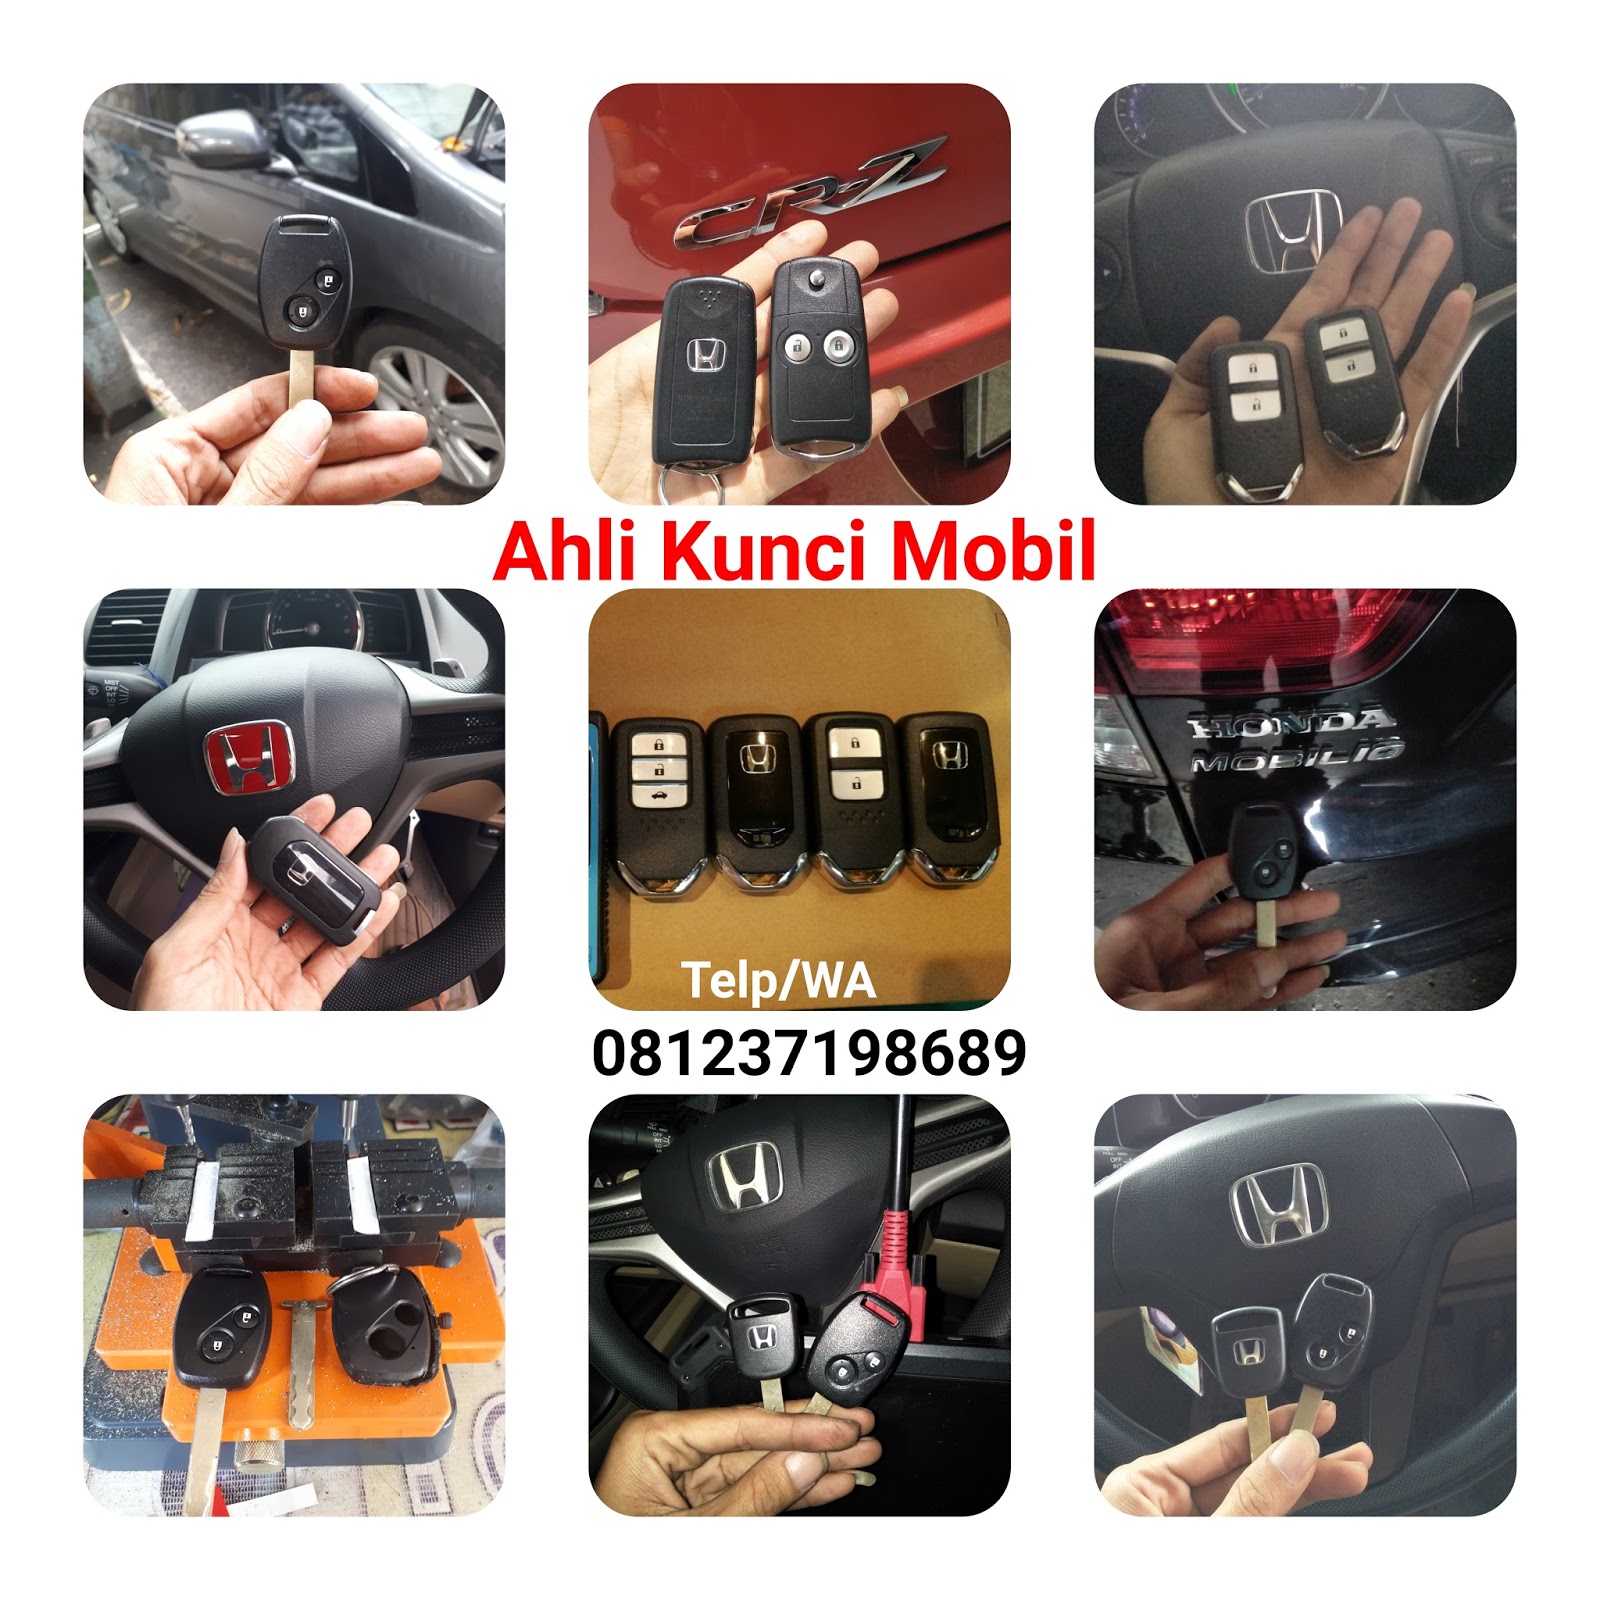 Ahli Kunci Mobil dan Remote Mobil di Denpasar 081237198689